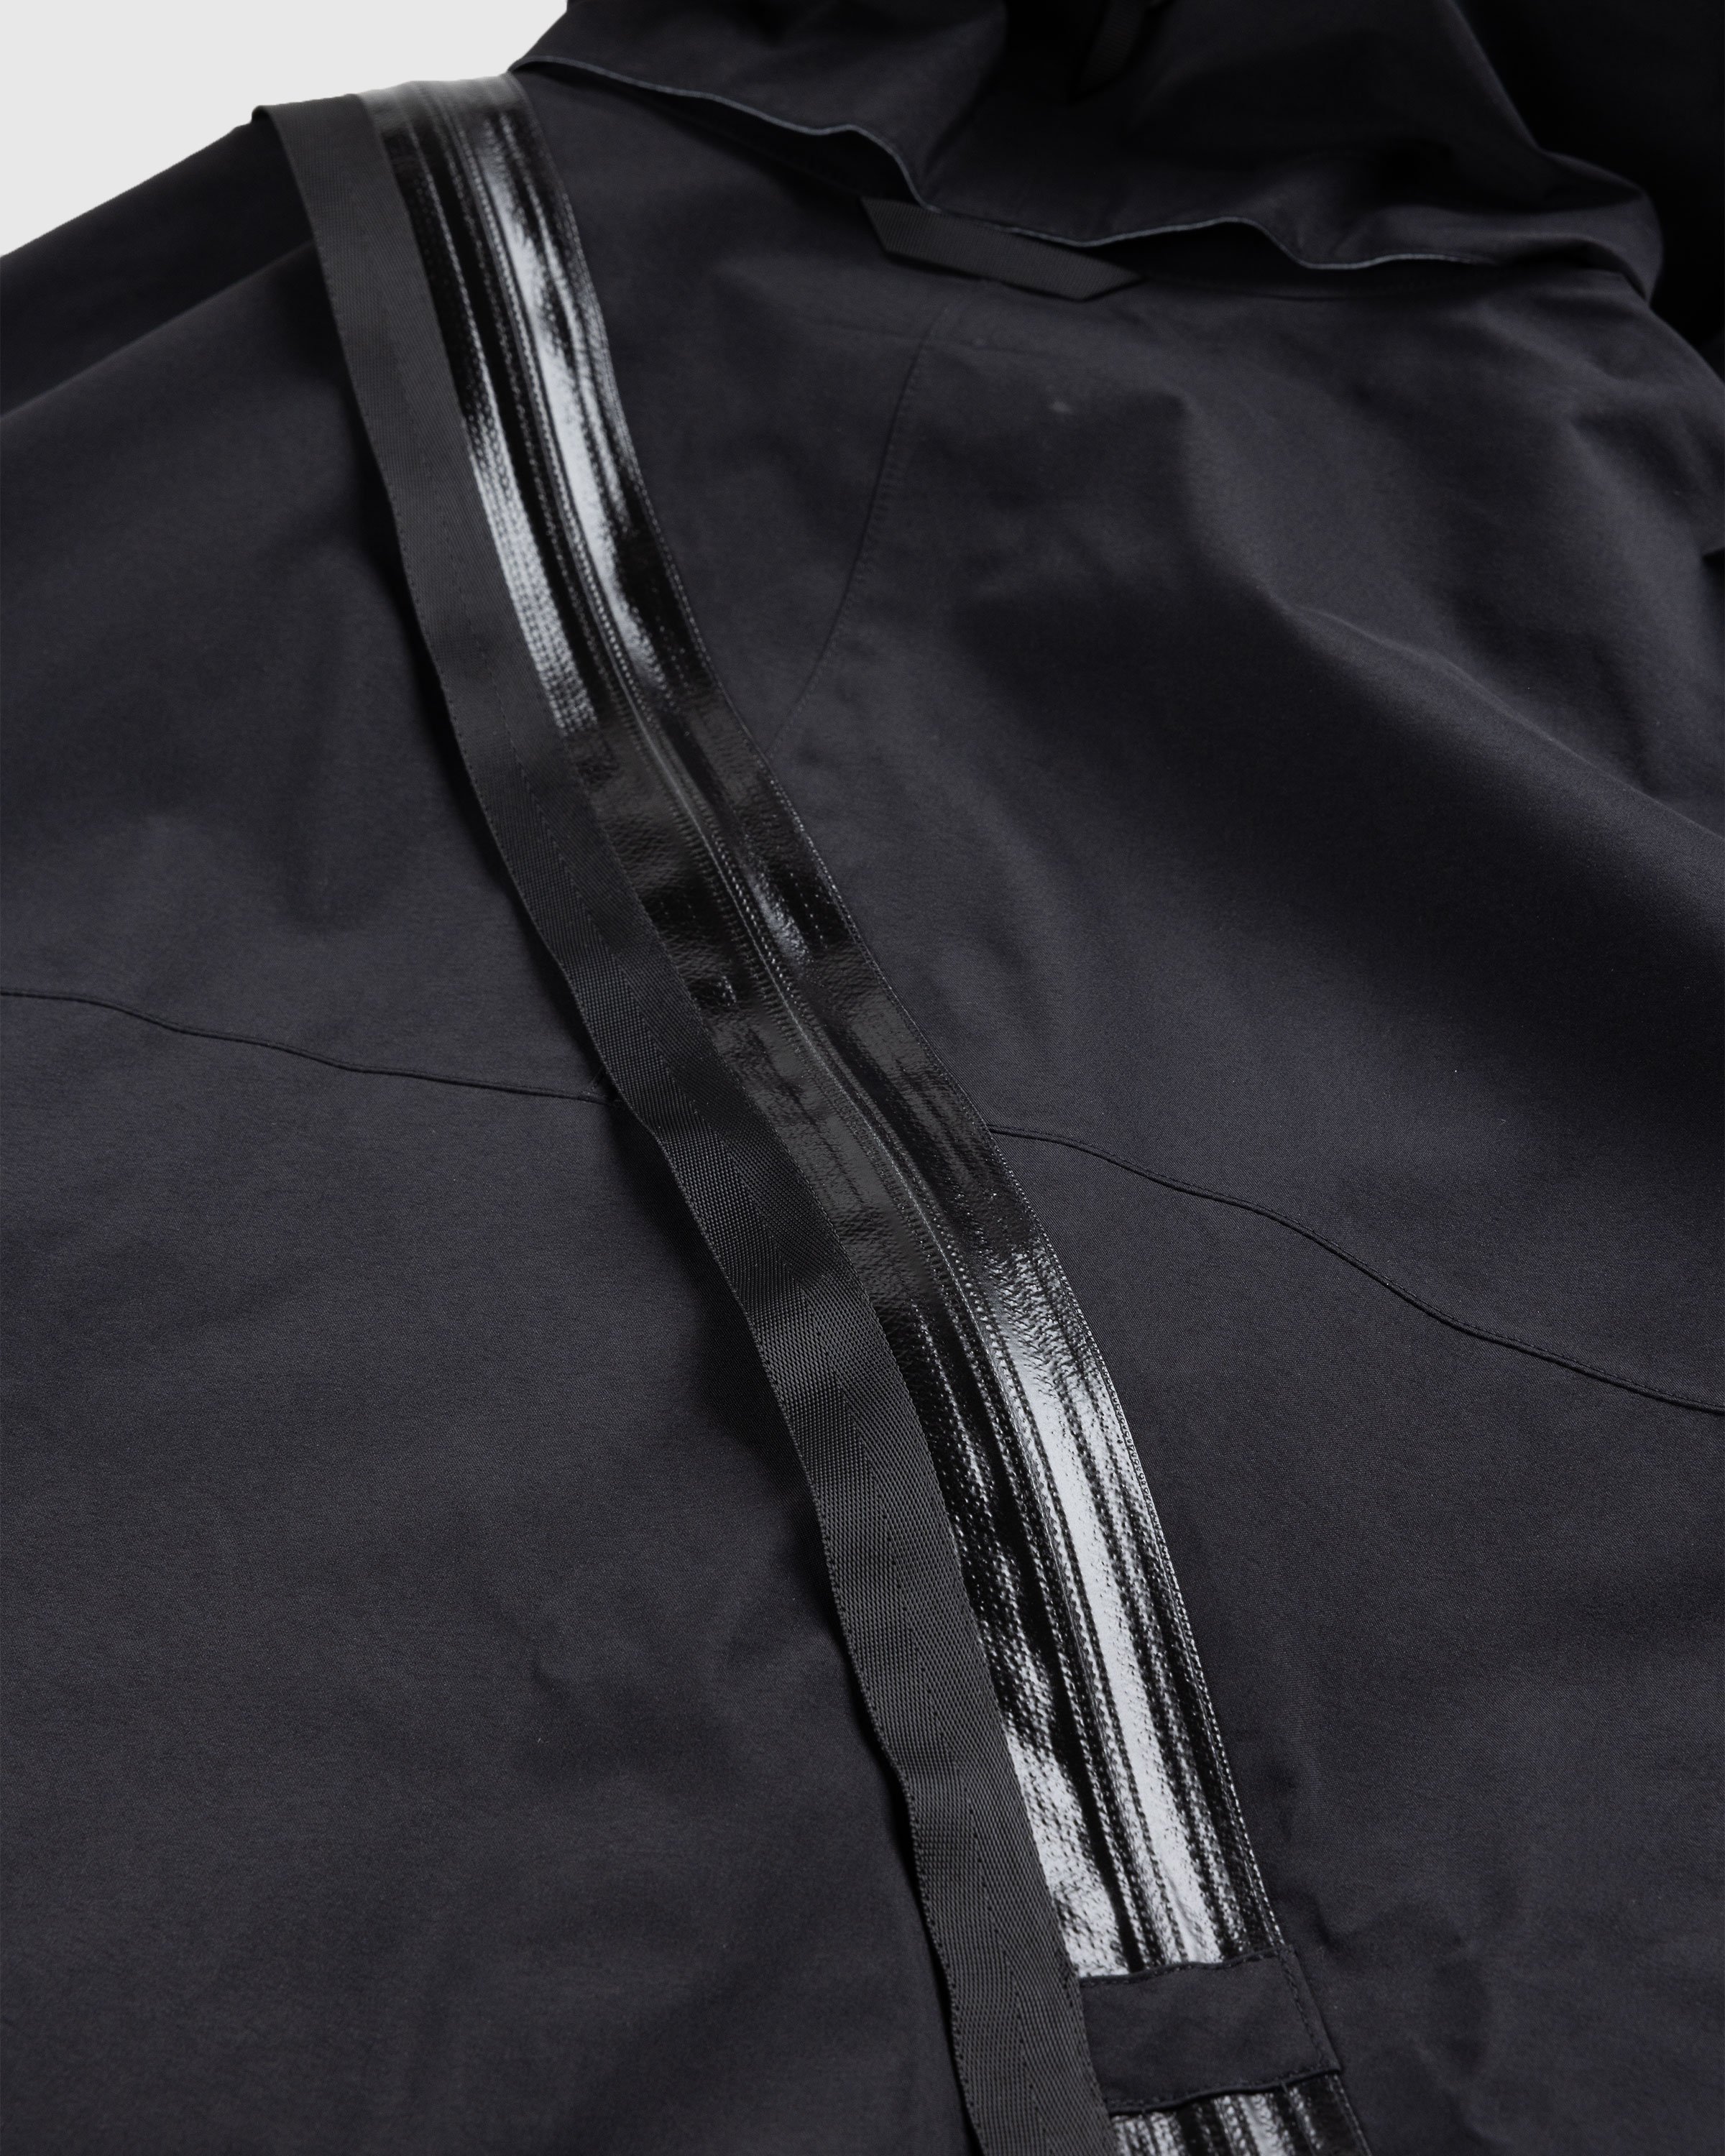 ACRONYM - J115-GT Jacket Black - Clothing - Black - Image 6